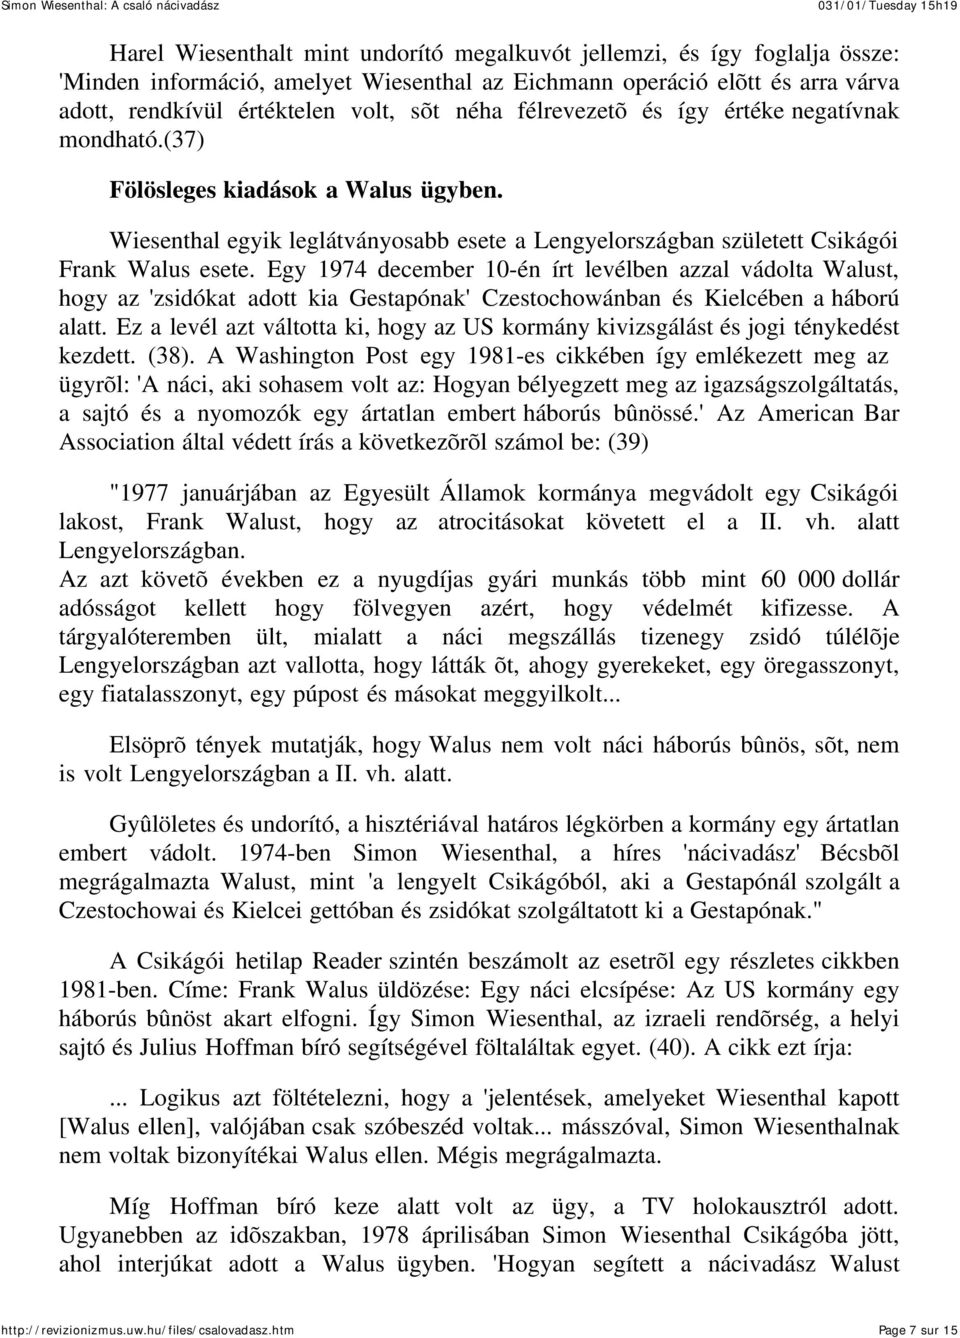 Egy 1974 december 10-én írt levélben azzal vádolta Walust, hogy az 'zsidókat adott kia Gestapónak' Czestochowánban és Kielcében a háború alatt.